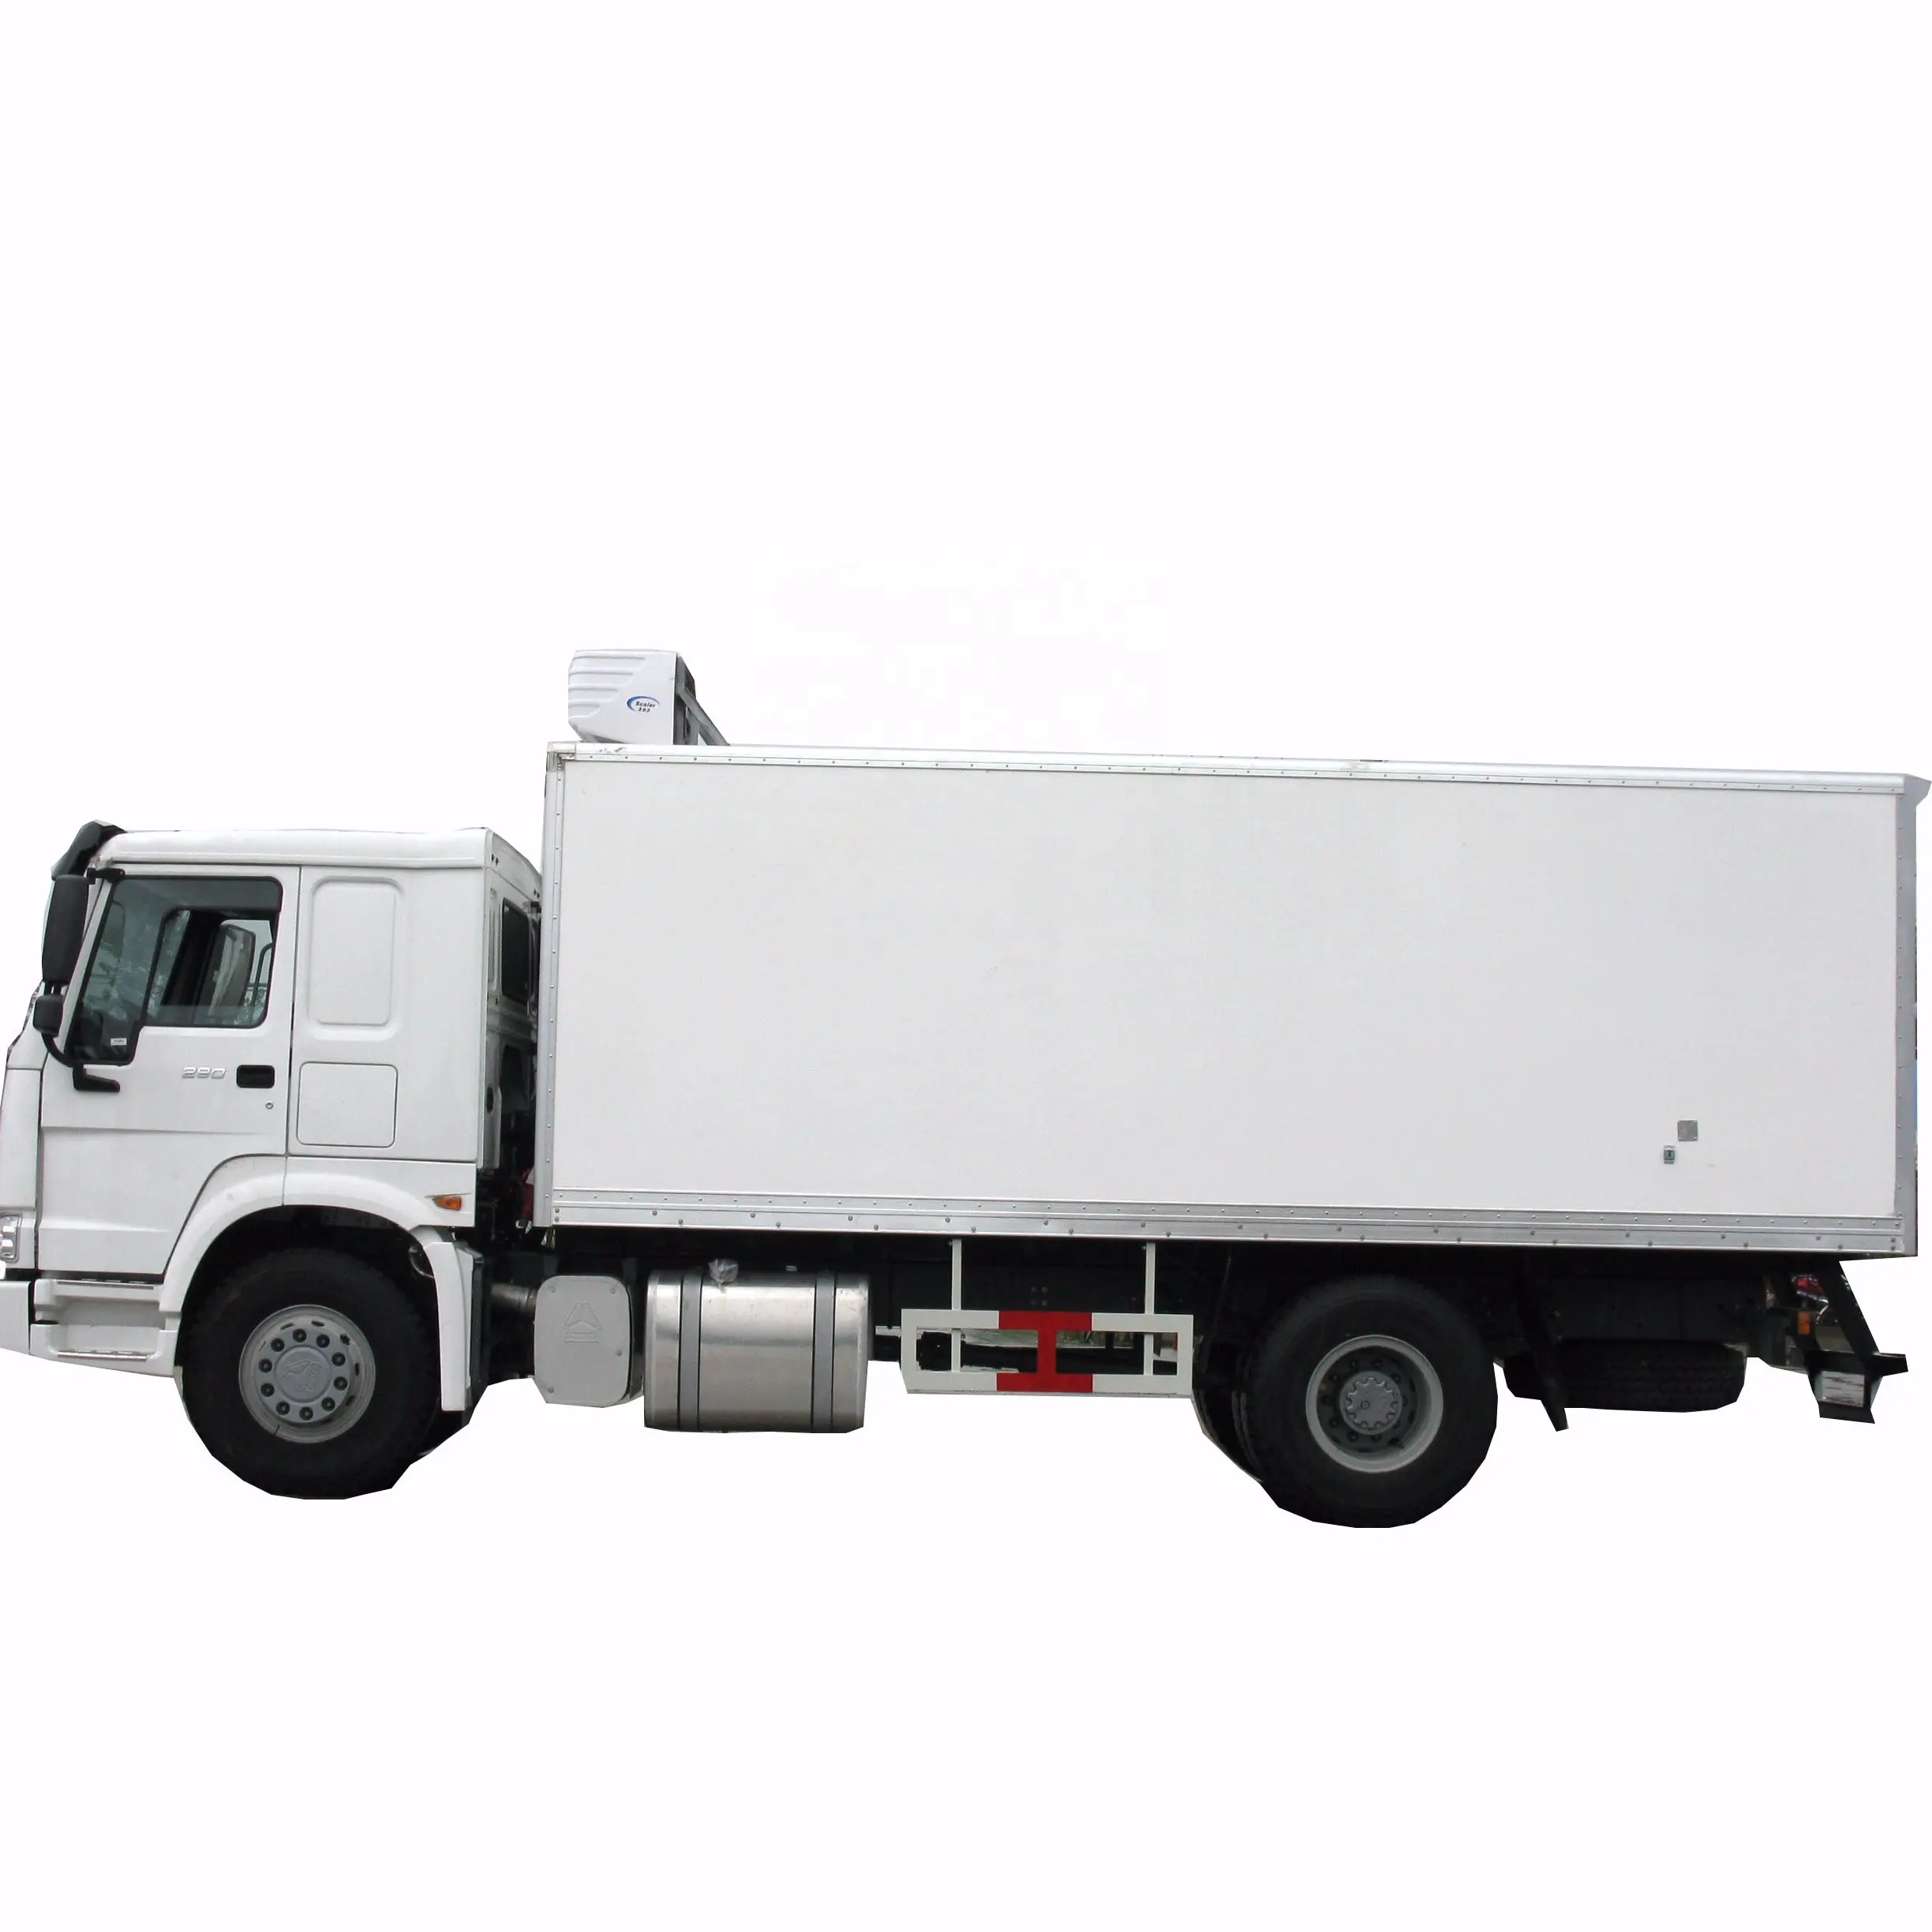 HOWO 4x2 식품 트럭 냉장 냉동고 트럭 10 톤 상자 열 킹 트럭 냉동 장치 냉동고 최고의 가격